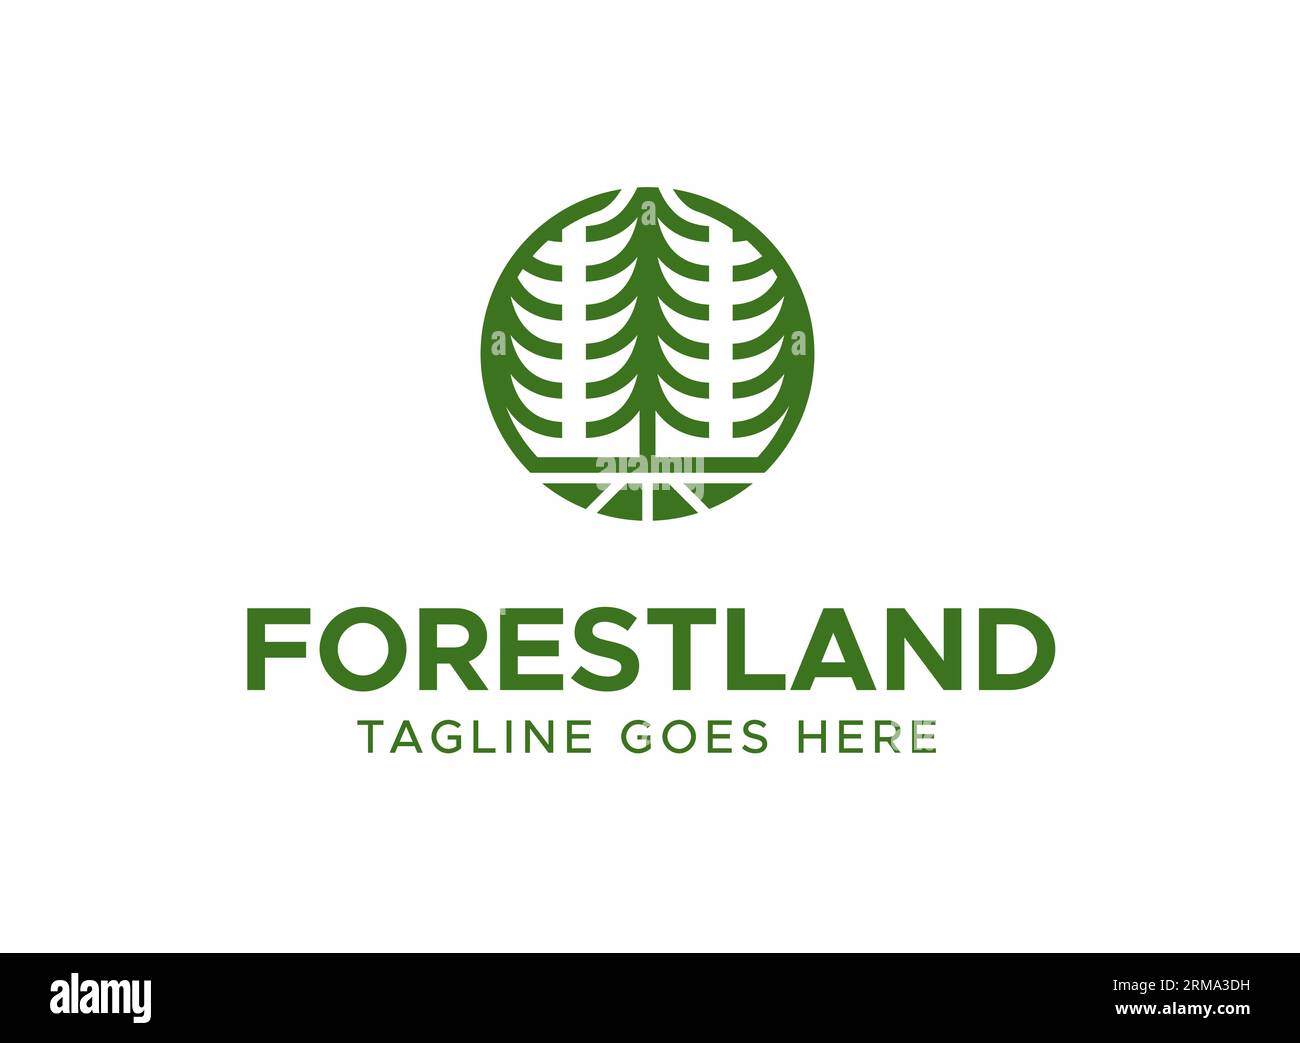 Vous cherchez un logo qui incarne l'esprit des grands espaces ? Ne cherchez pas plus loin que notre logo Forest Land Pine Tree Outdoor! Doté d'un design élégant Illustration de Vecteur